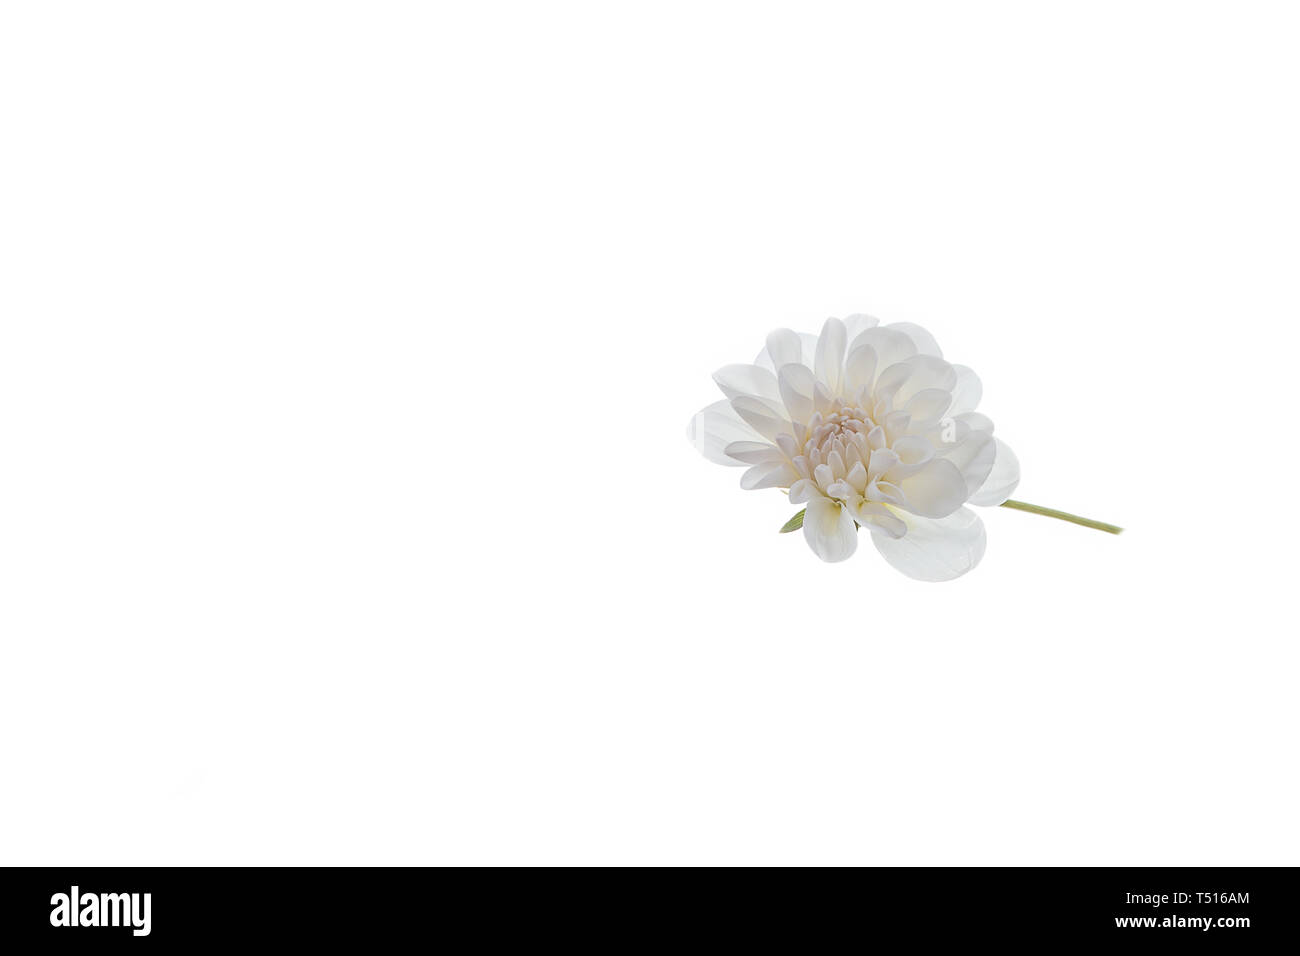 Chrysanthemums: Những đóa hoa cúc vàng rực rỡ trong hình ảnh sẽ khiến bạn cảm thấy yên bình và thư thái. Hãy thưởng thức hình ảnh tuyệt đẹp này và đắm chìm vào không gian yên tĩnh.